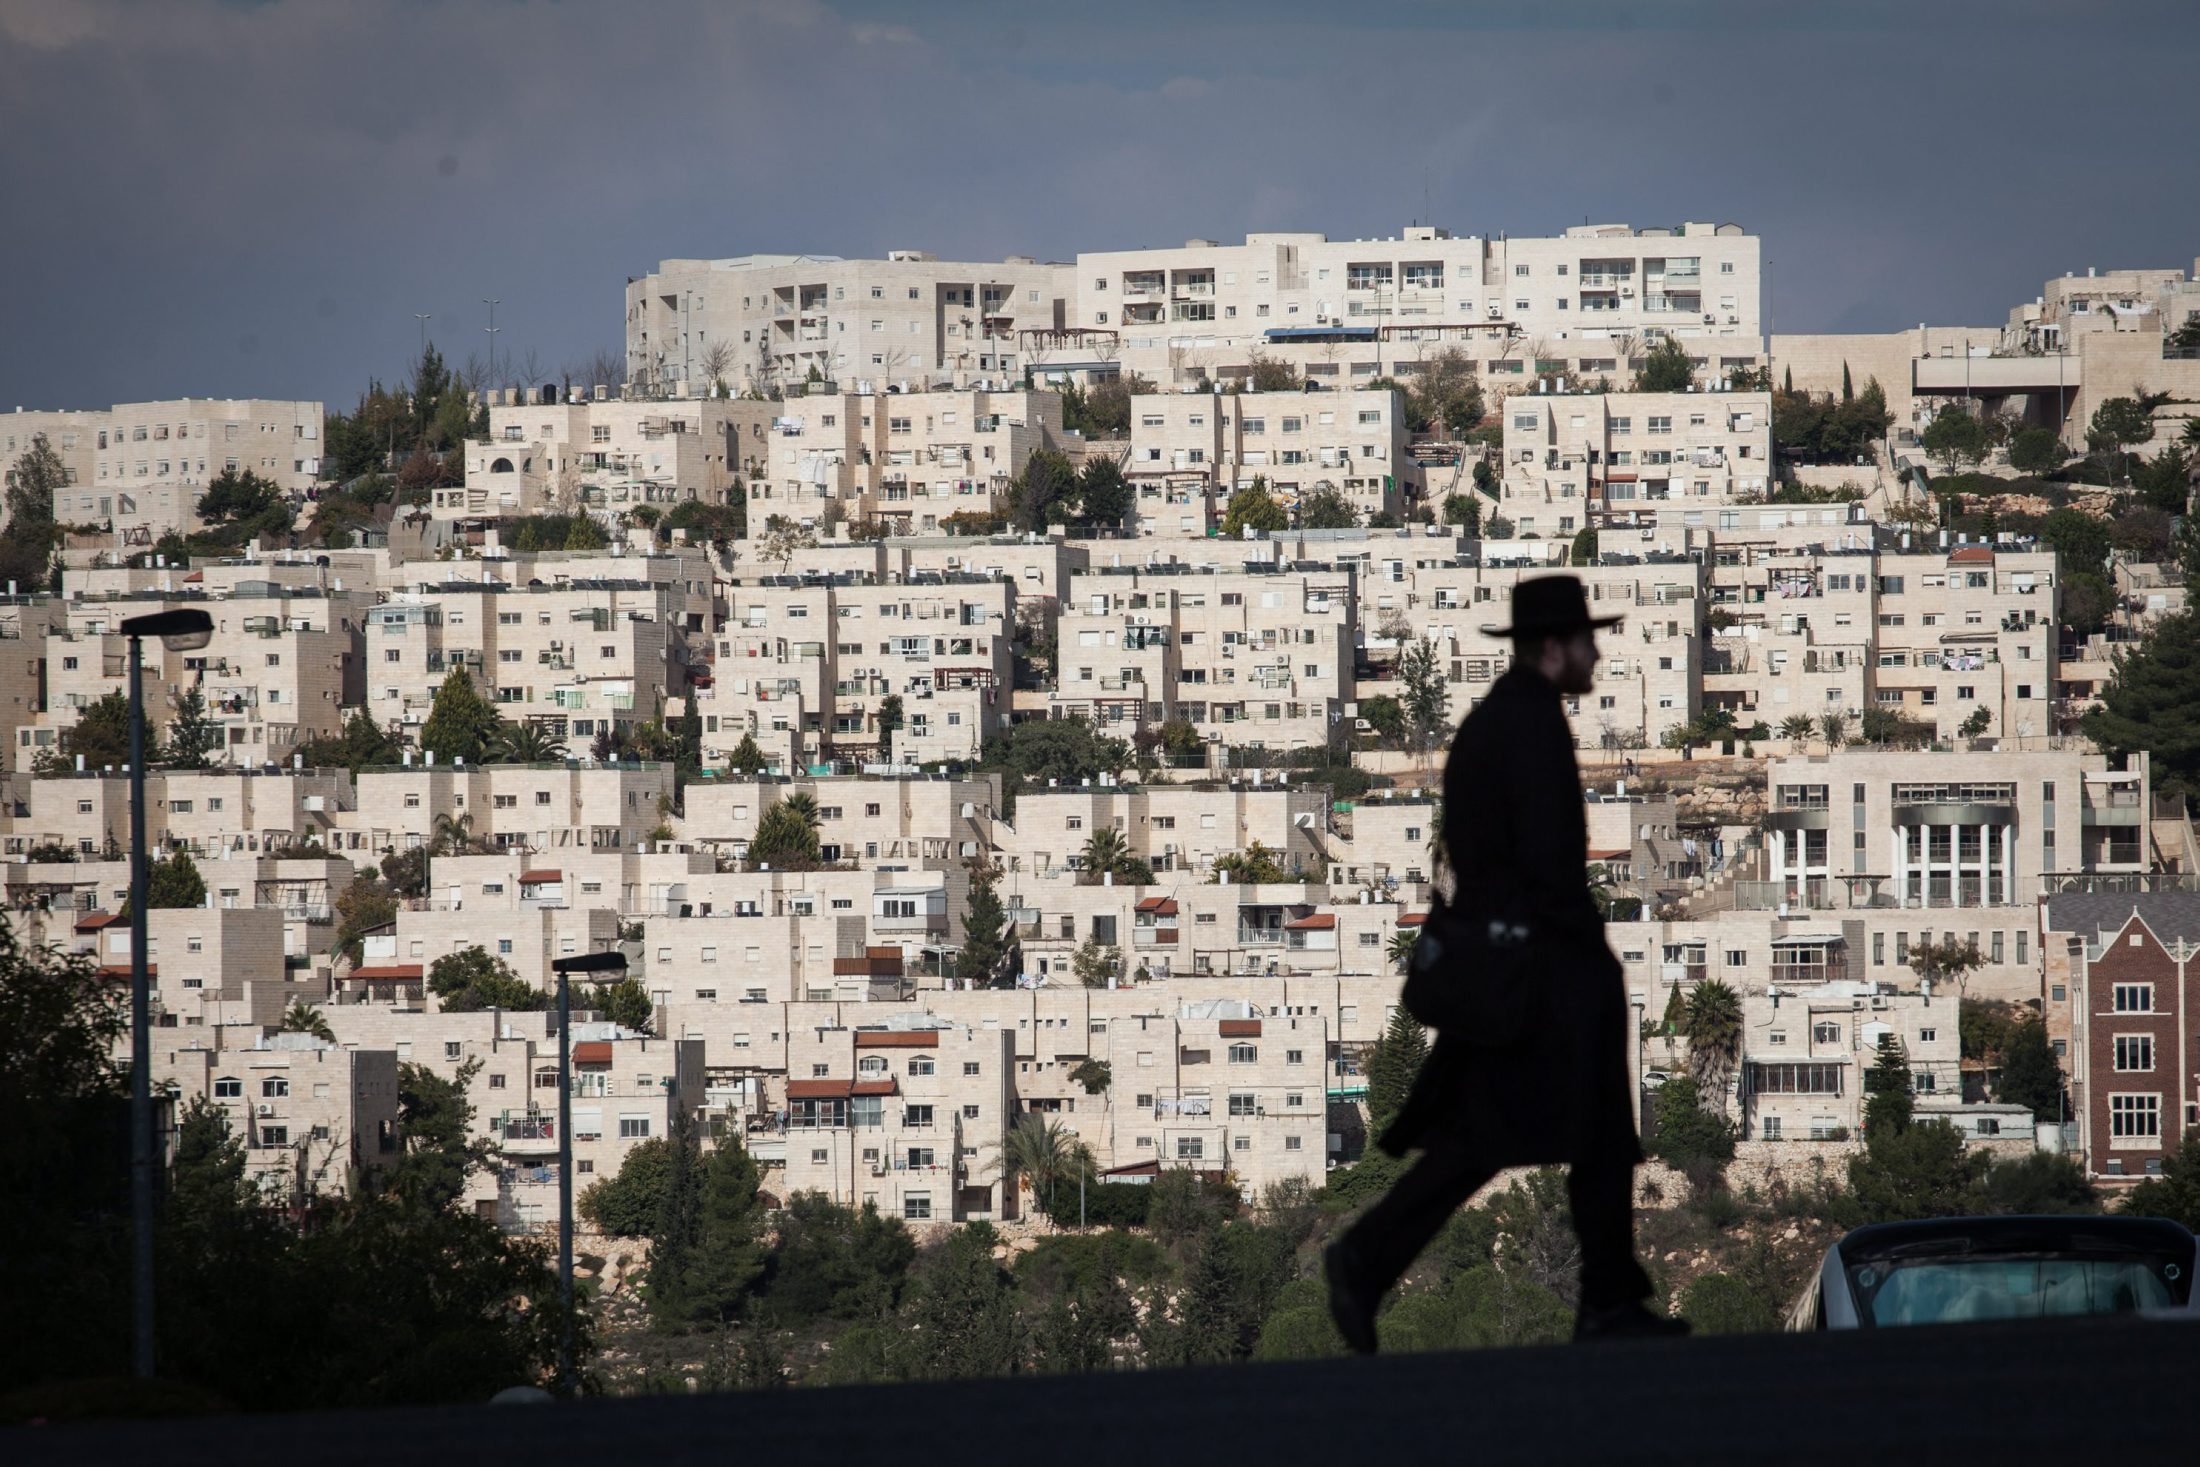 وزير إسرائيلي يطرح الأحد قانونا بالكنيست لـ”شرعنة” مستوطنات بالضفة الغربية